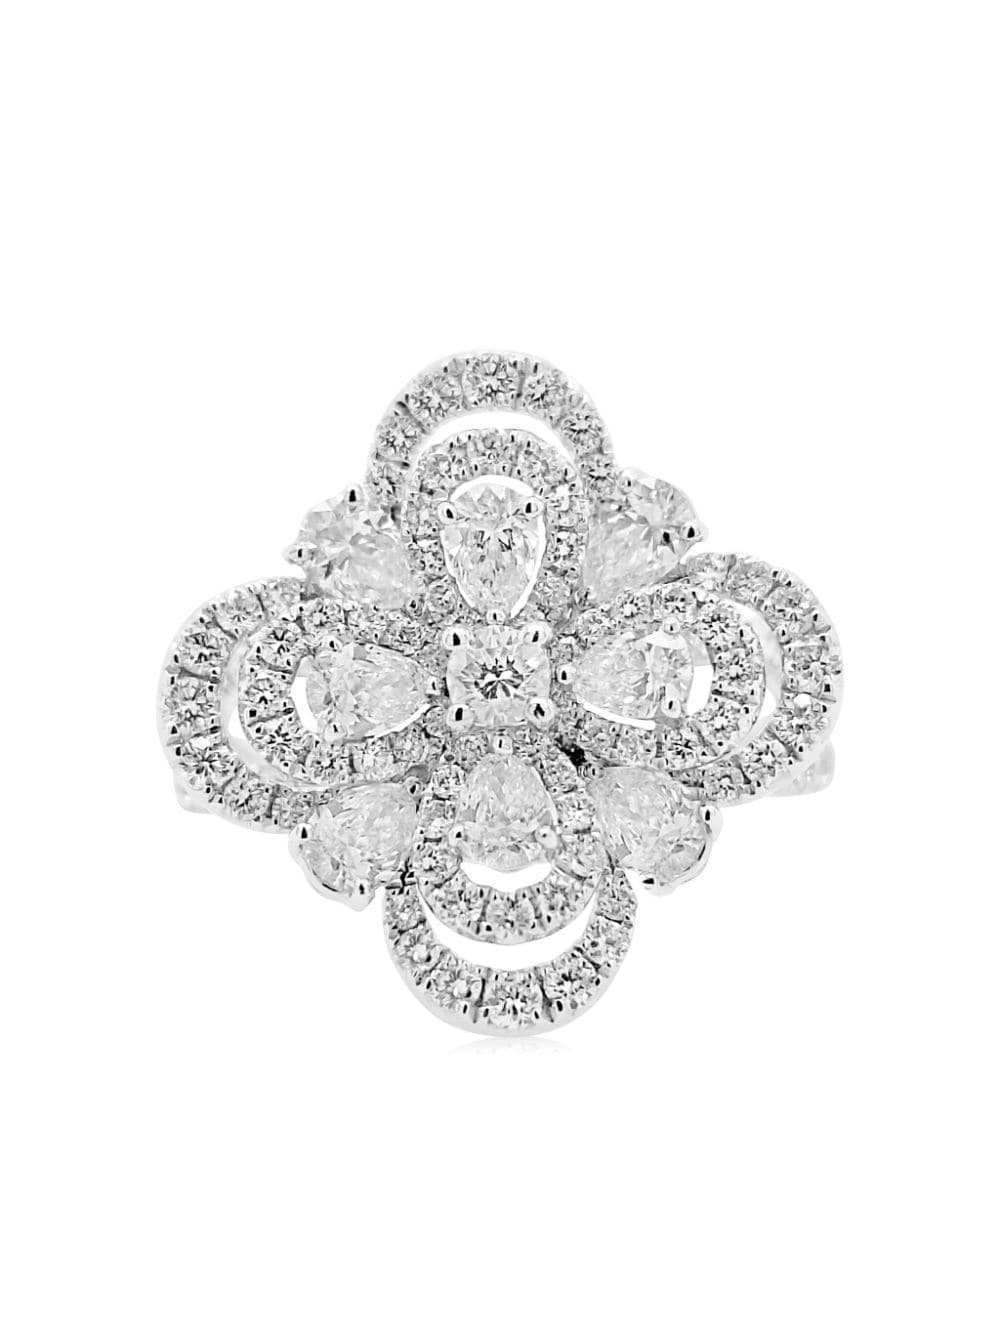 HYT Jewelry platinum flower diamond cocktail ring - Silver von HYT Jewelry